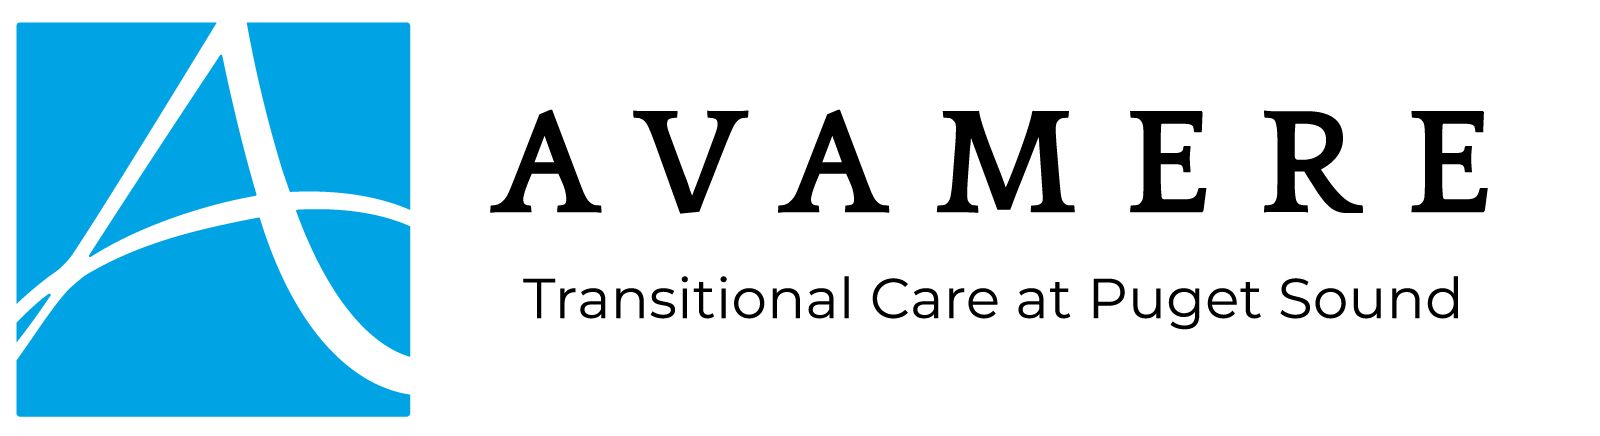 Avamere Transitional Care of Puget Sound Logo